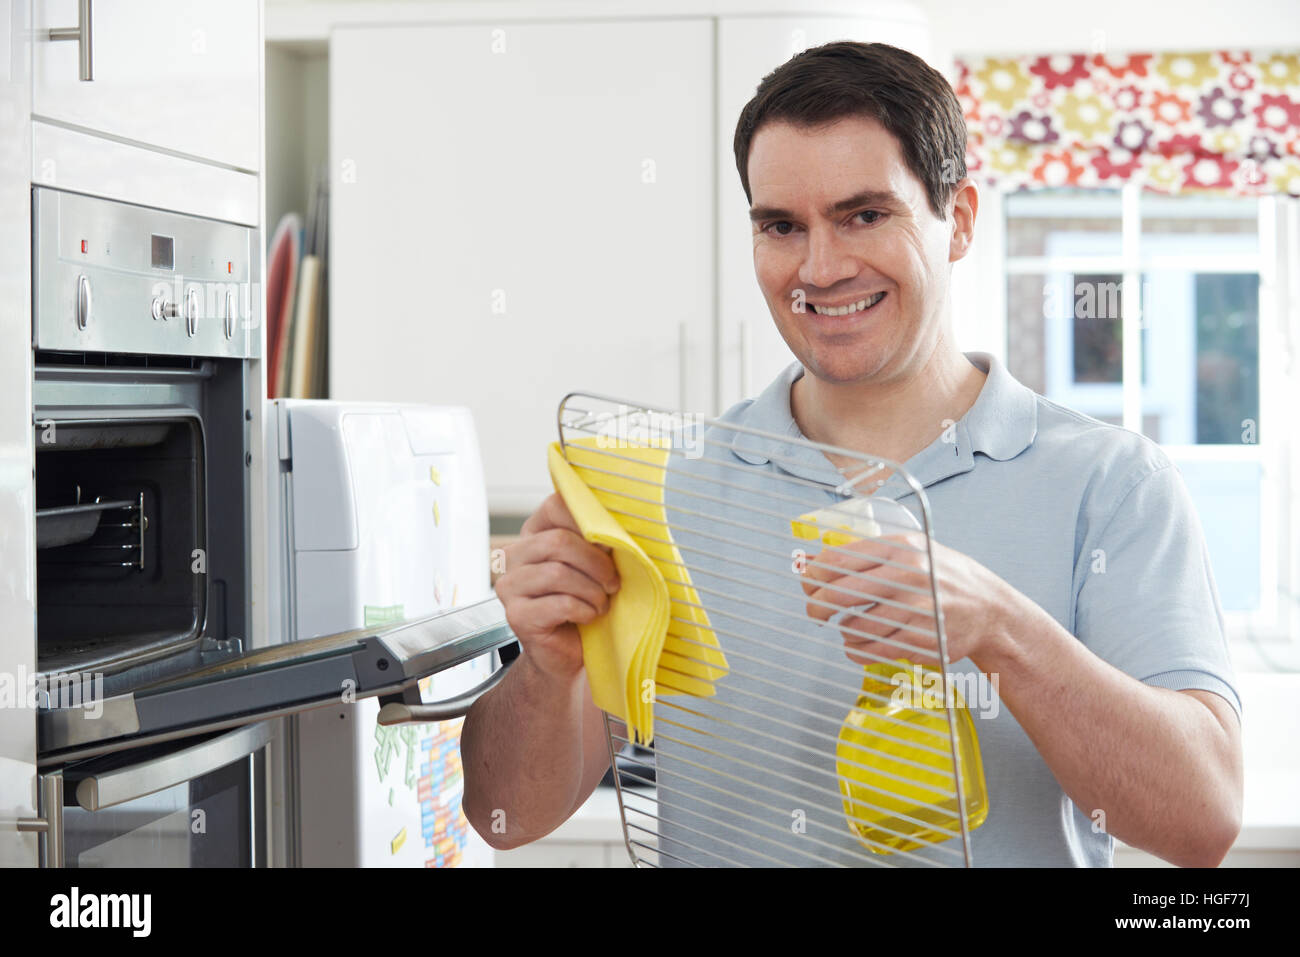 Mann Reinigung Backofen In der Küche Stockfoto